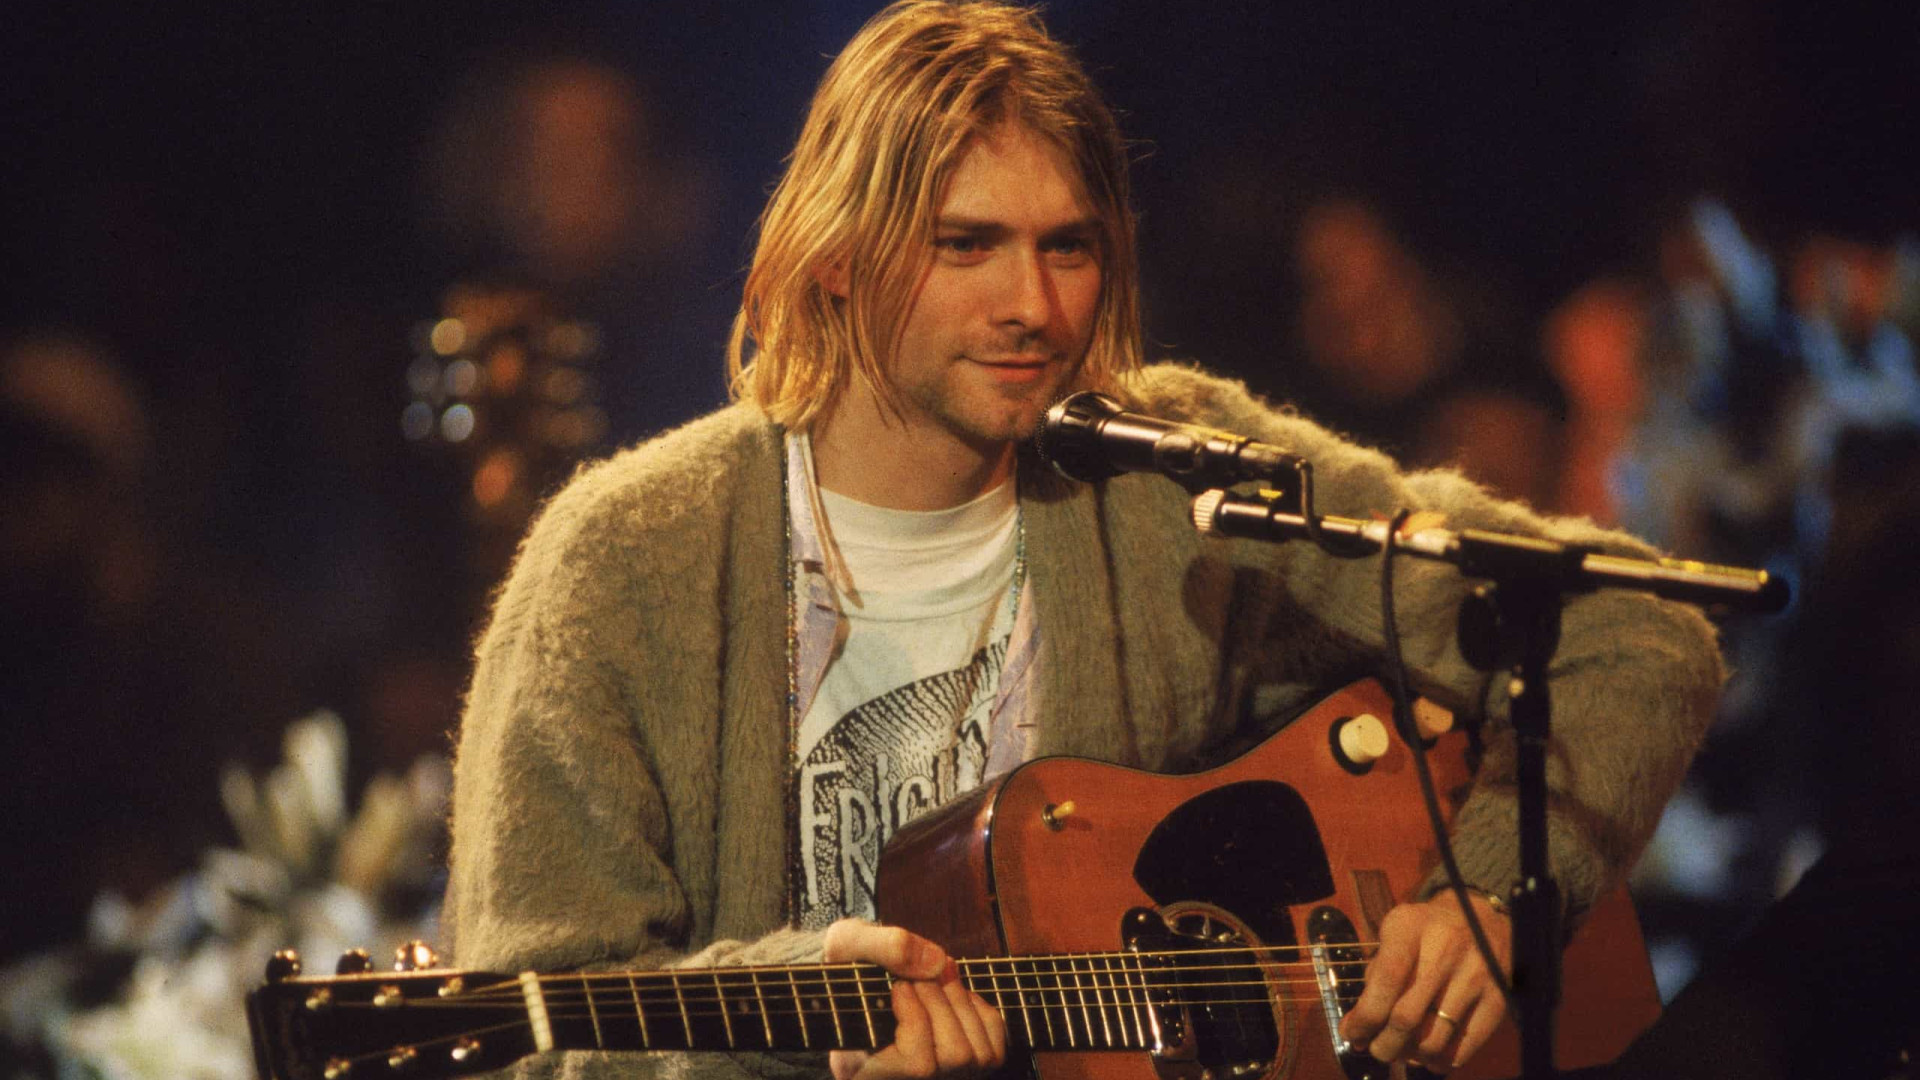 Roupas de Prince e autorretrato de Kurt Cobain são vendidos em leilão